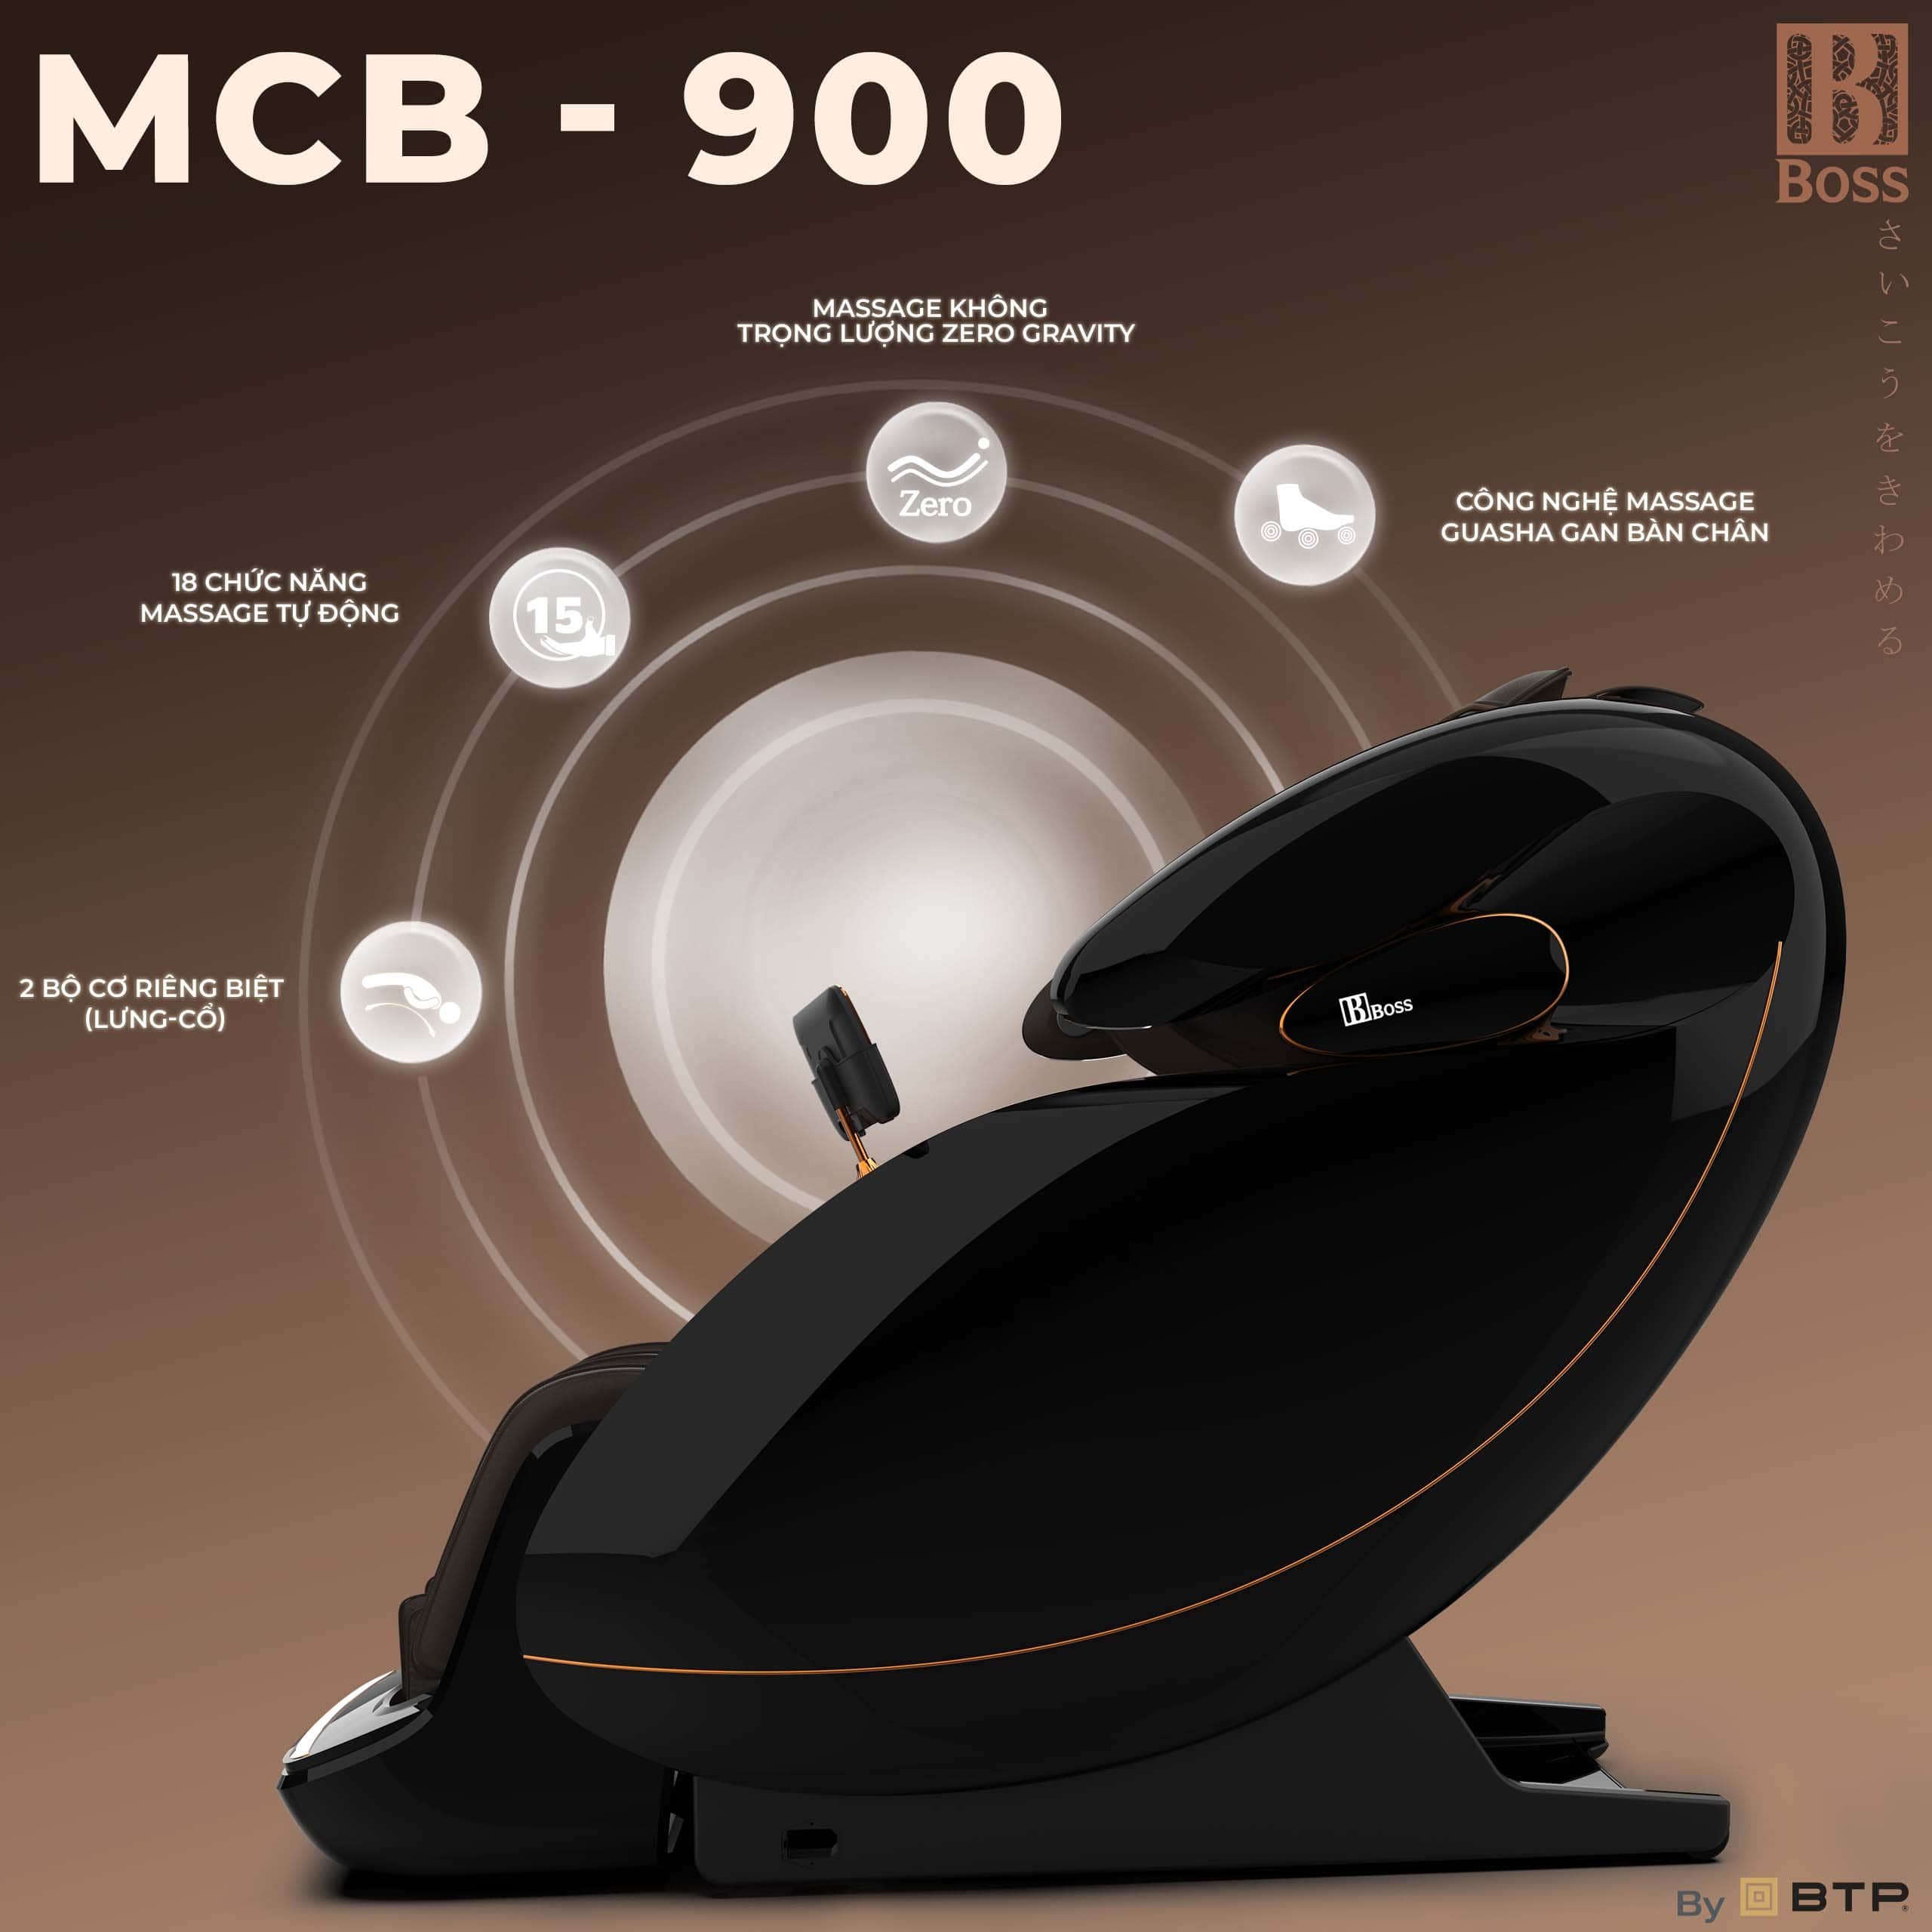 ghế massage Boss MCB-900 là sự kết hợp giữa những bài tập đa dạng và loạt tính năng cao cấp